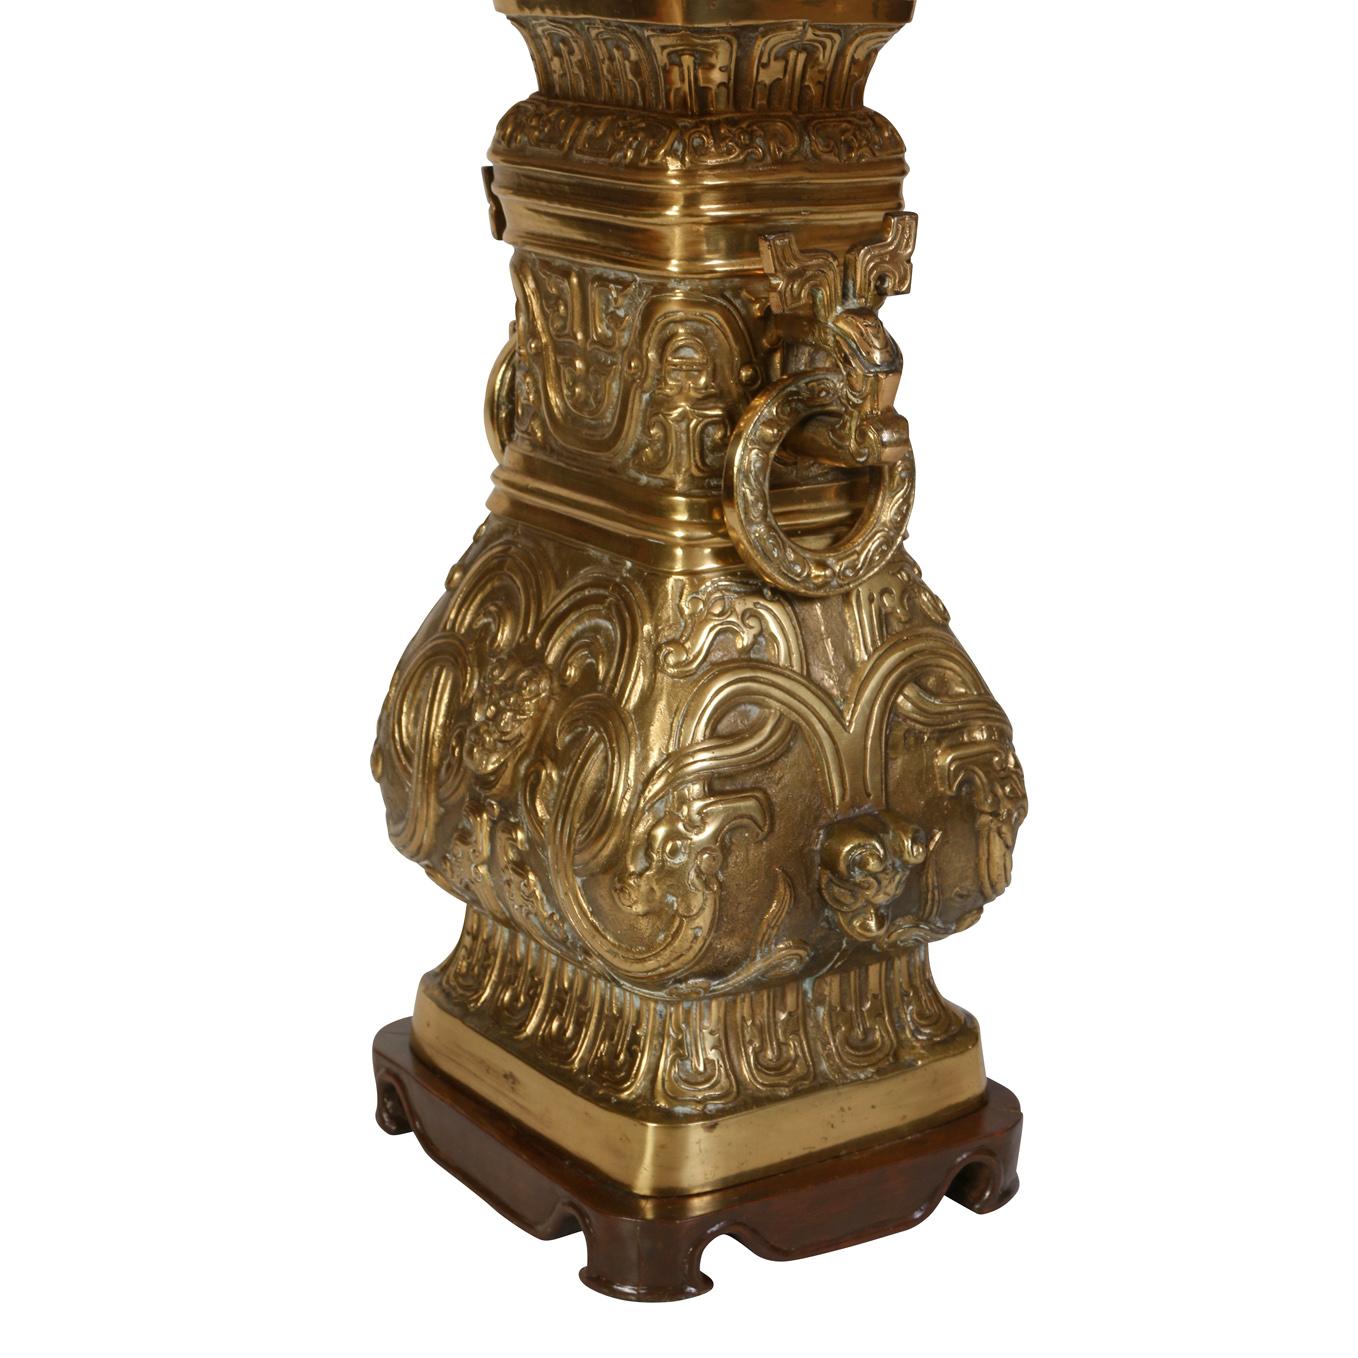 Une lampe asiatique en bronze antique avec deux poignées en anneau et des détails en relief sur tous les côtés, posée sur une base en bois.